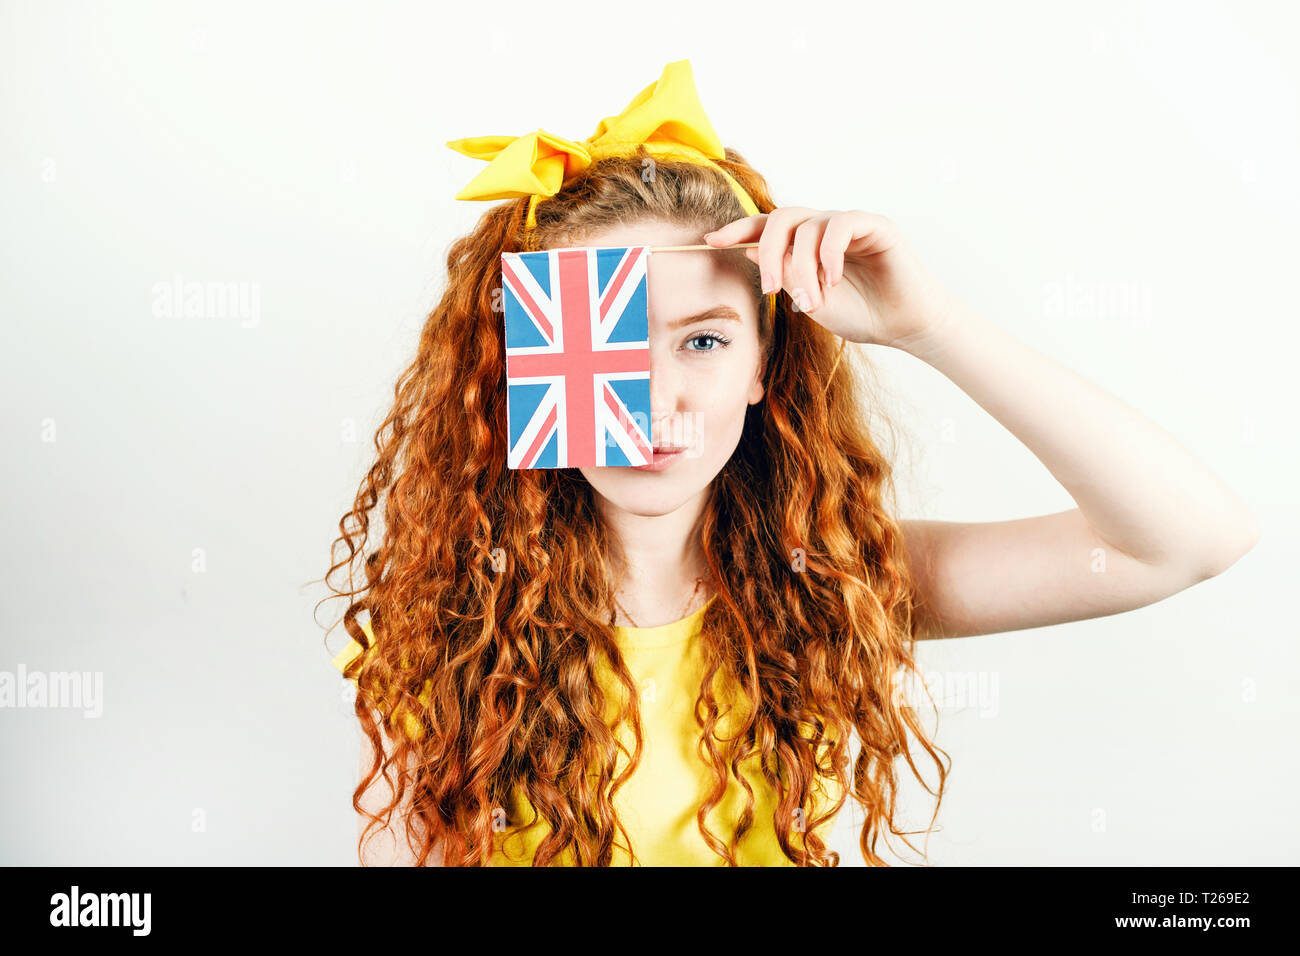 Fille rousse bouclée avec un arc jaune sur sa tête portant des T-shirt jaune dissimule son visage derrière le petit drapeau de l'Angleterre en étant debout sur le livre blanc ba Banque D'Images